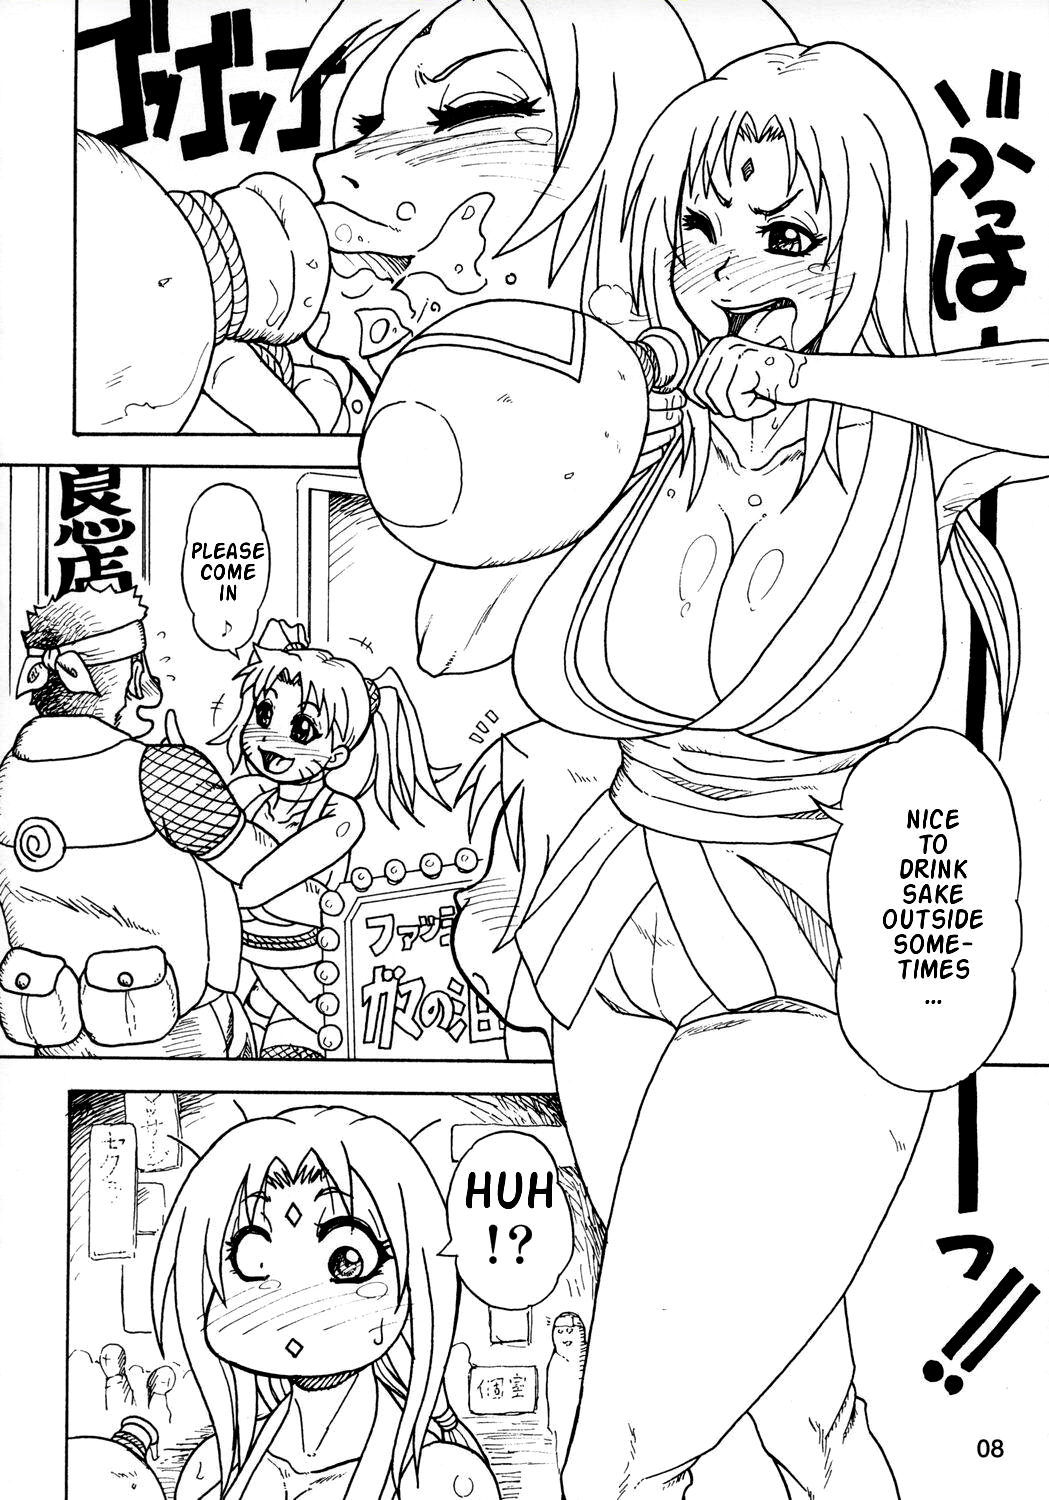 Kunoichi Style Max Speed naruto 8 hentai manga